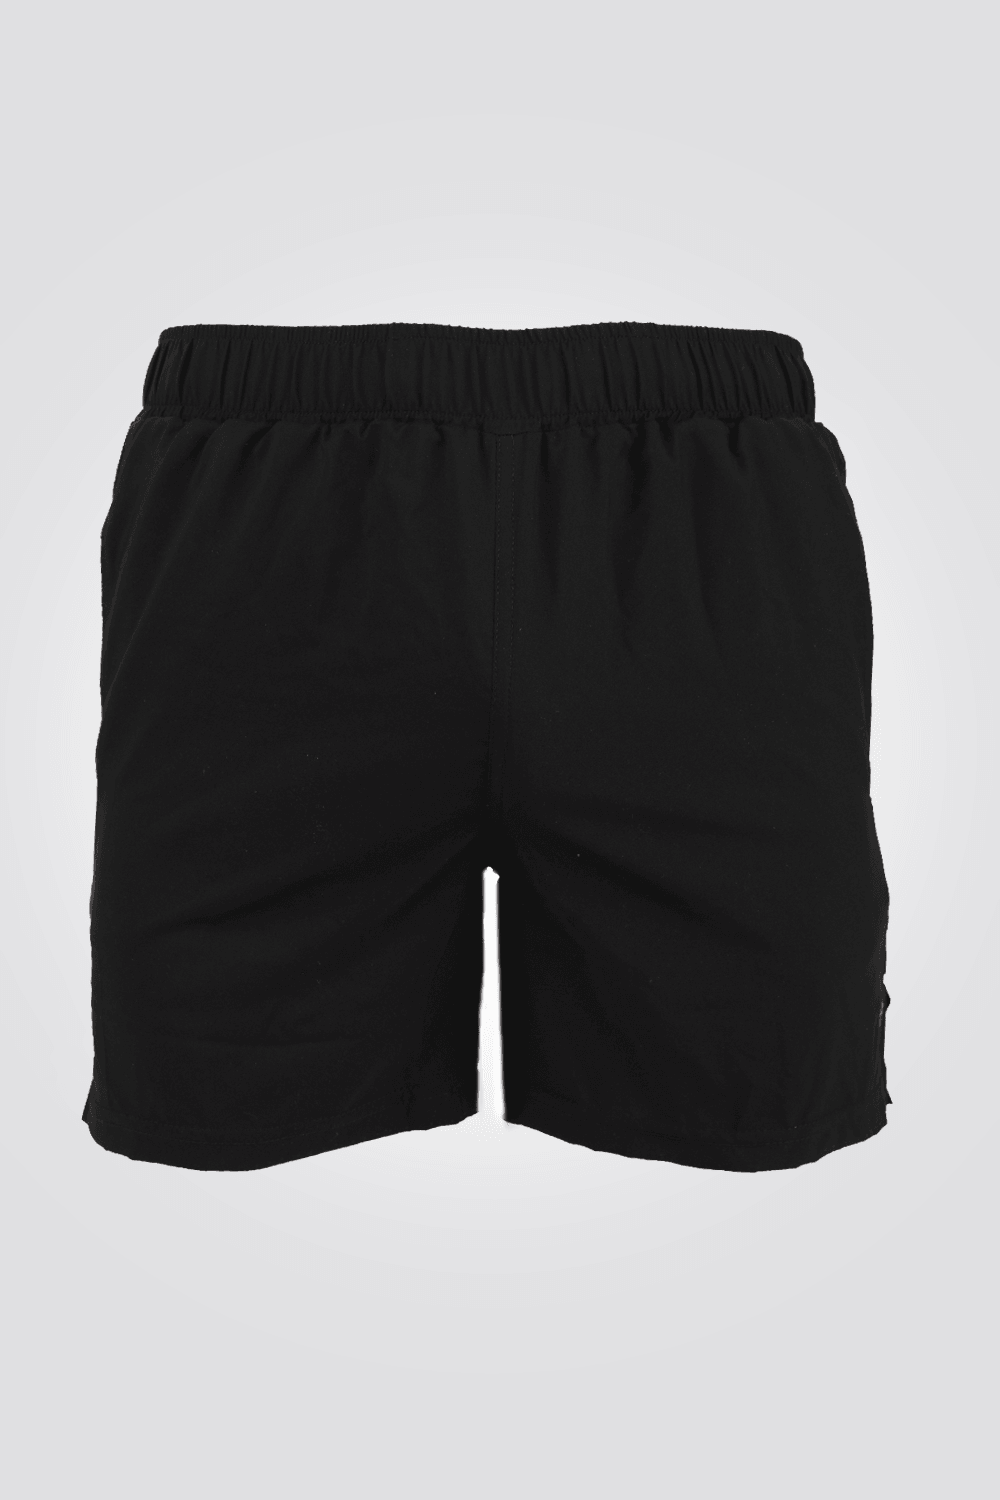 DELTA - מכנסי ריצה קצרים בצבע שחור לגבר - MASHBIR//365